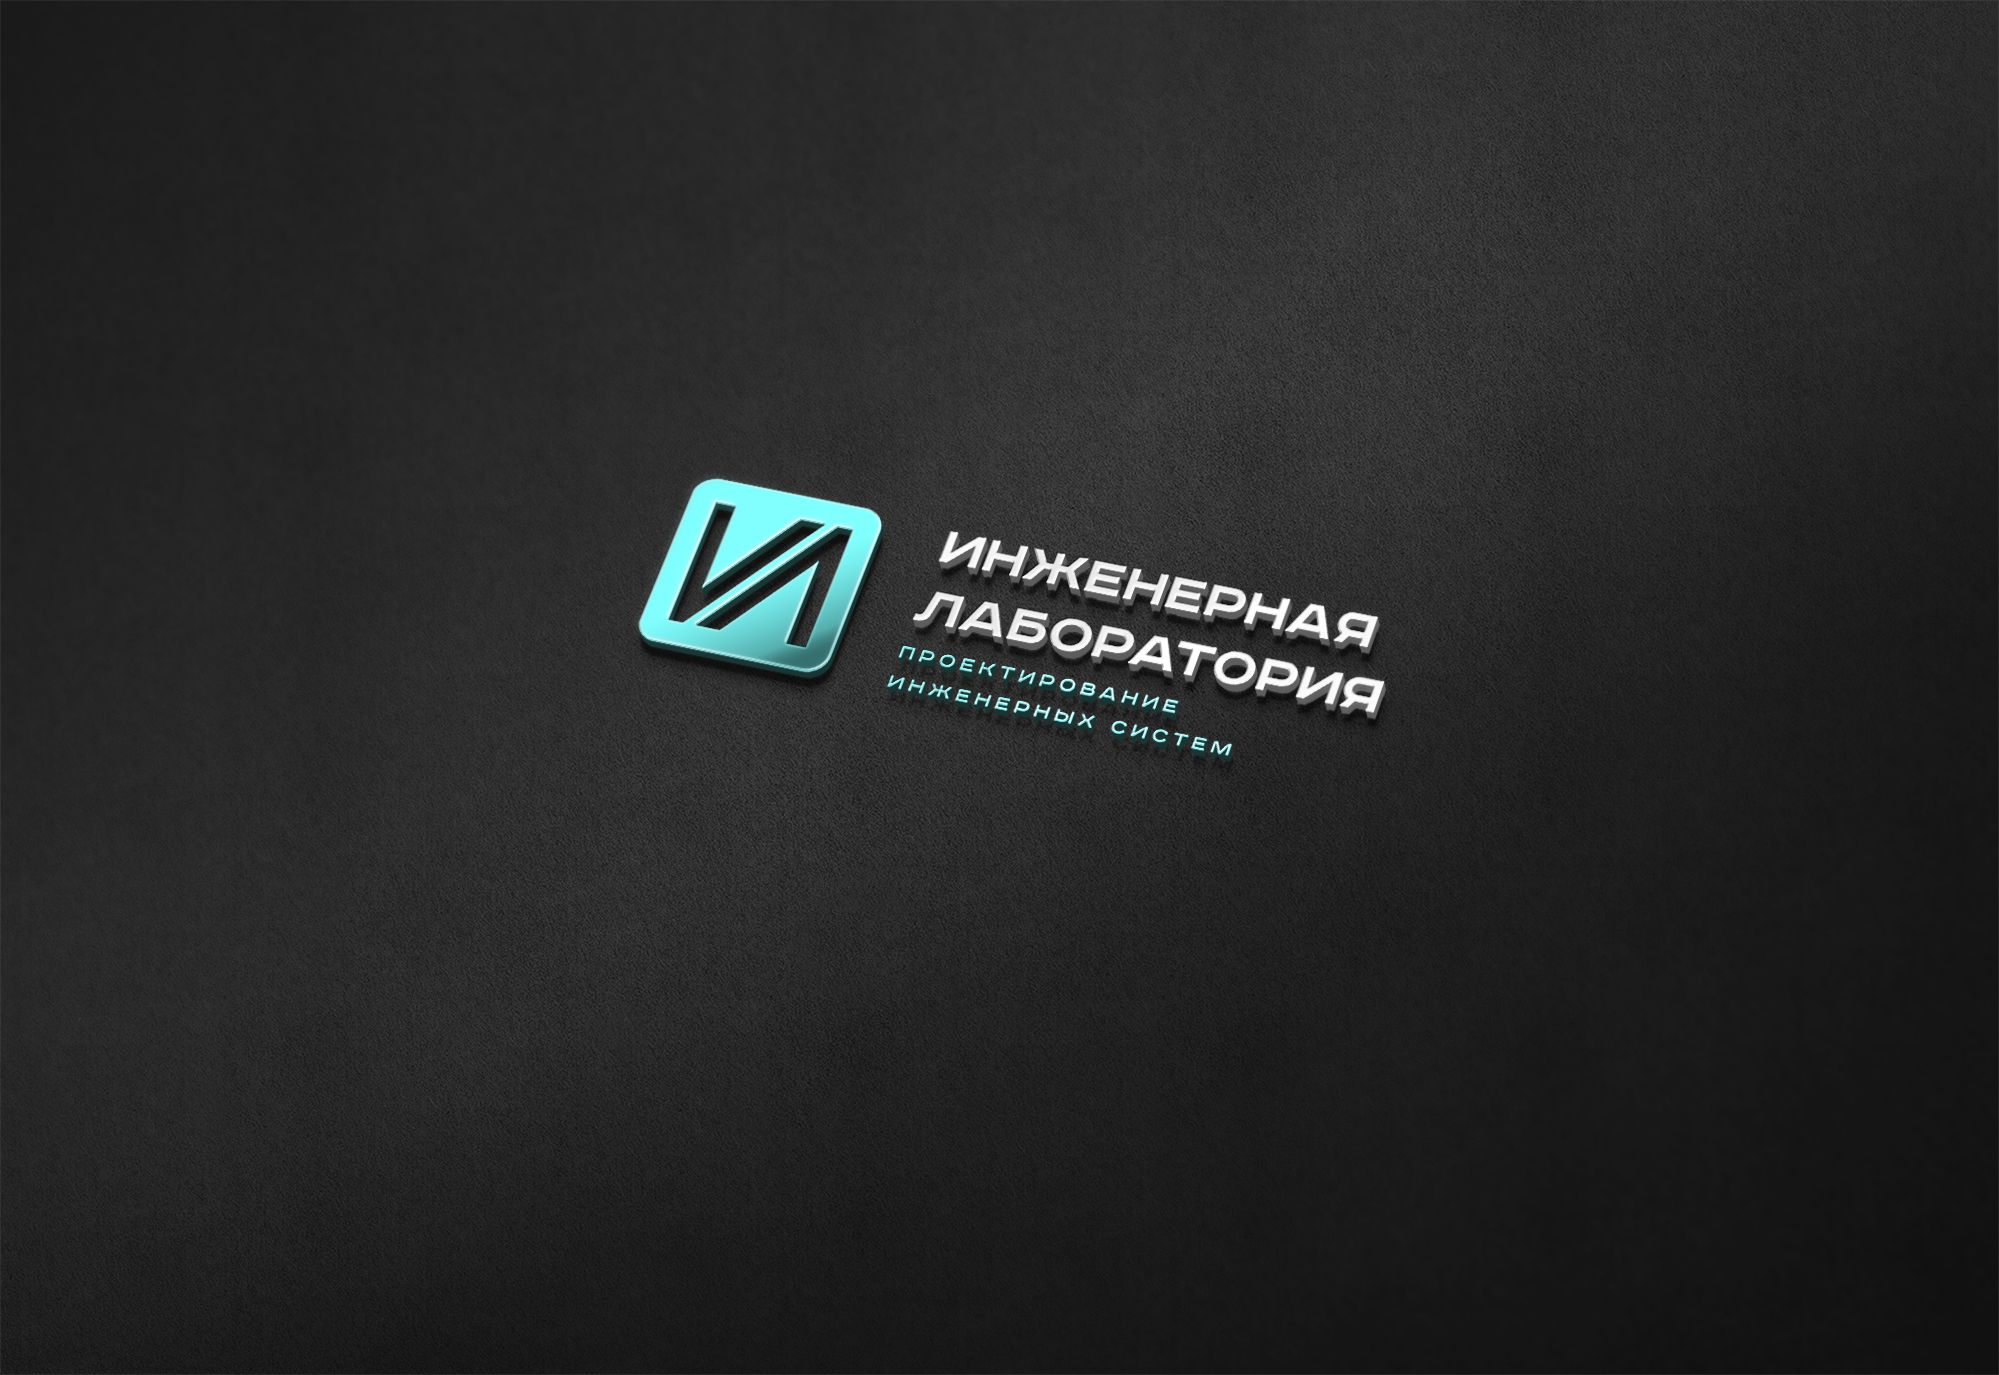 Лого и фирменный стиль для Инженерная лаборатория  - дизайнер U4po4mak